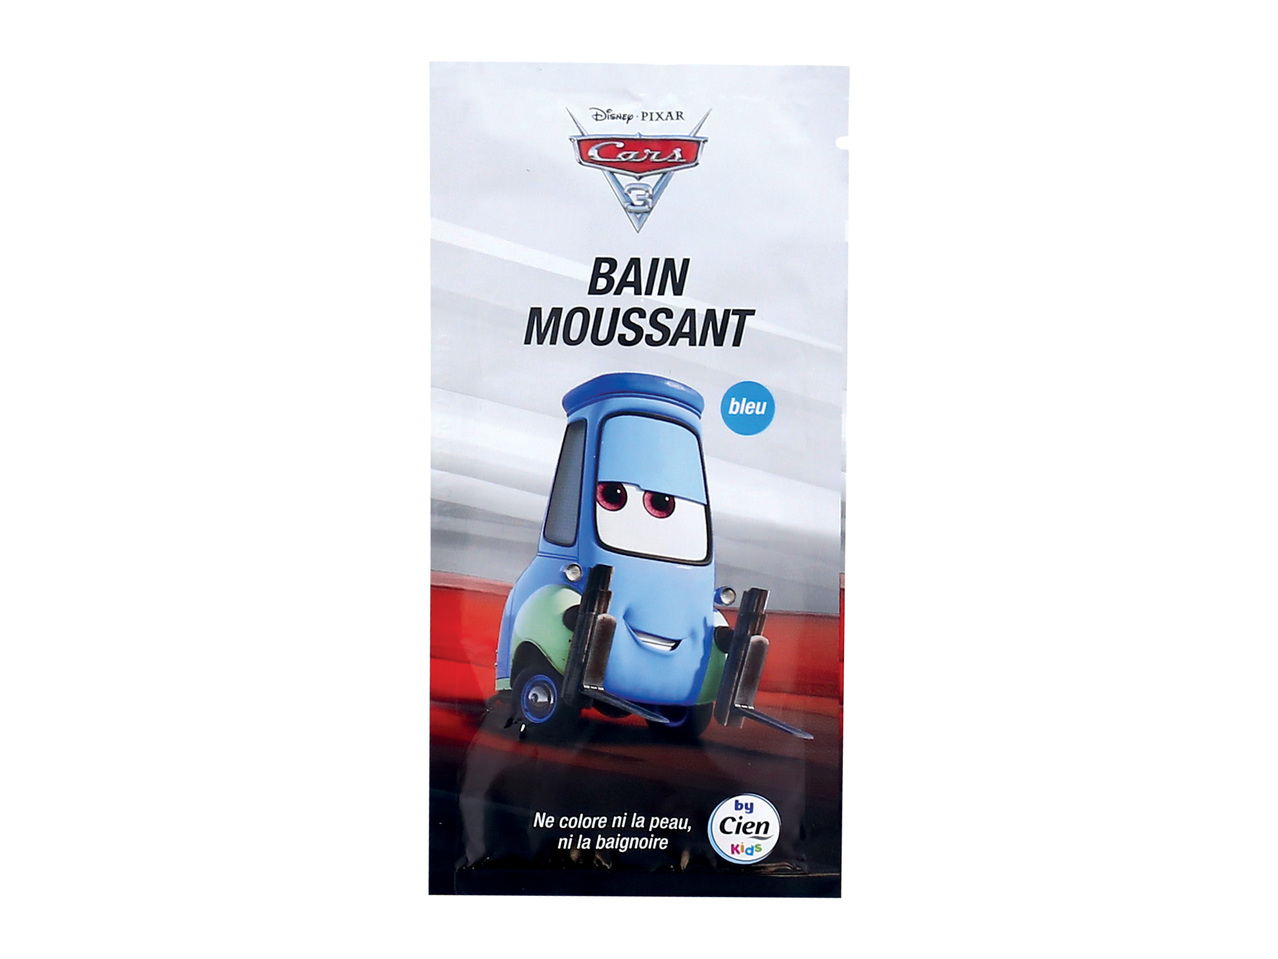 Bain moussant